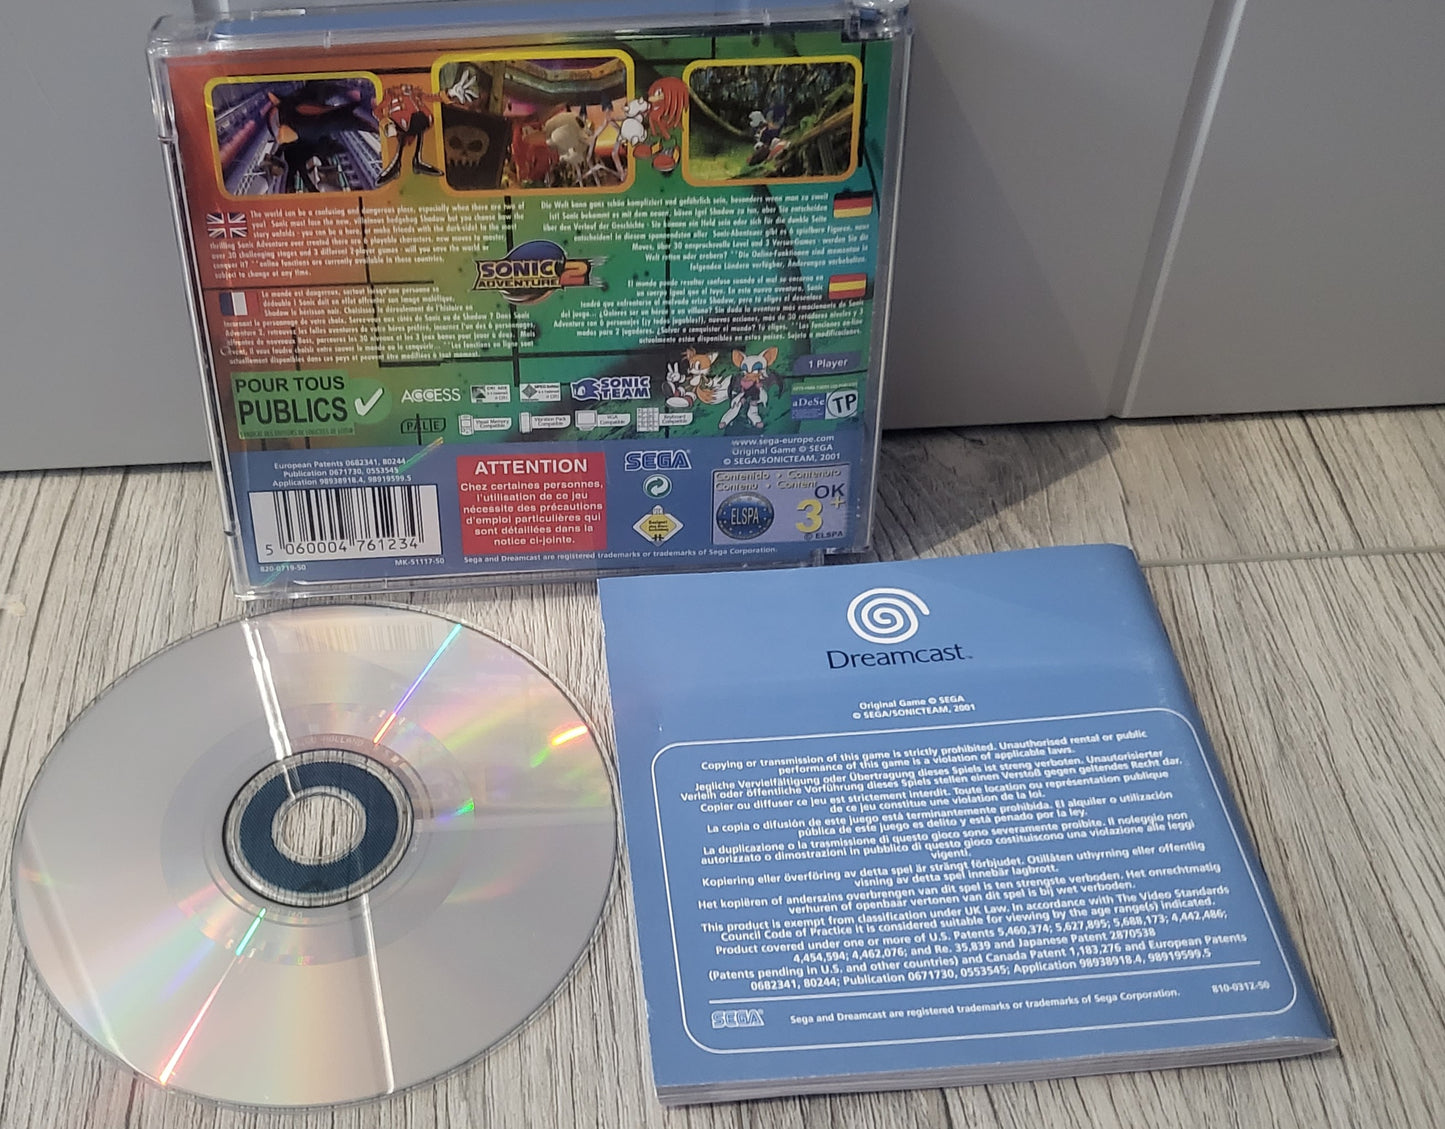 Sonic Adventure 2 Sega Dreamcast Game